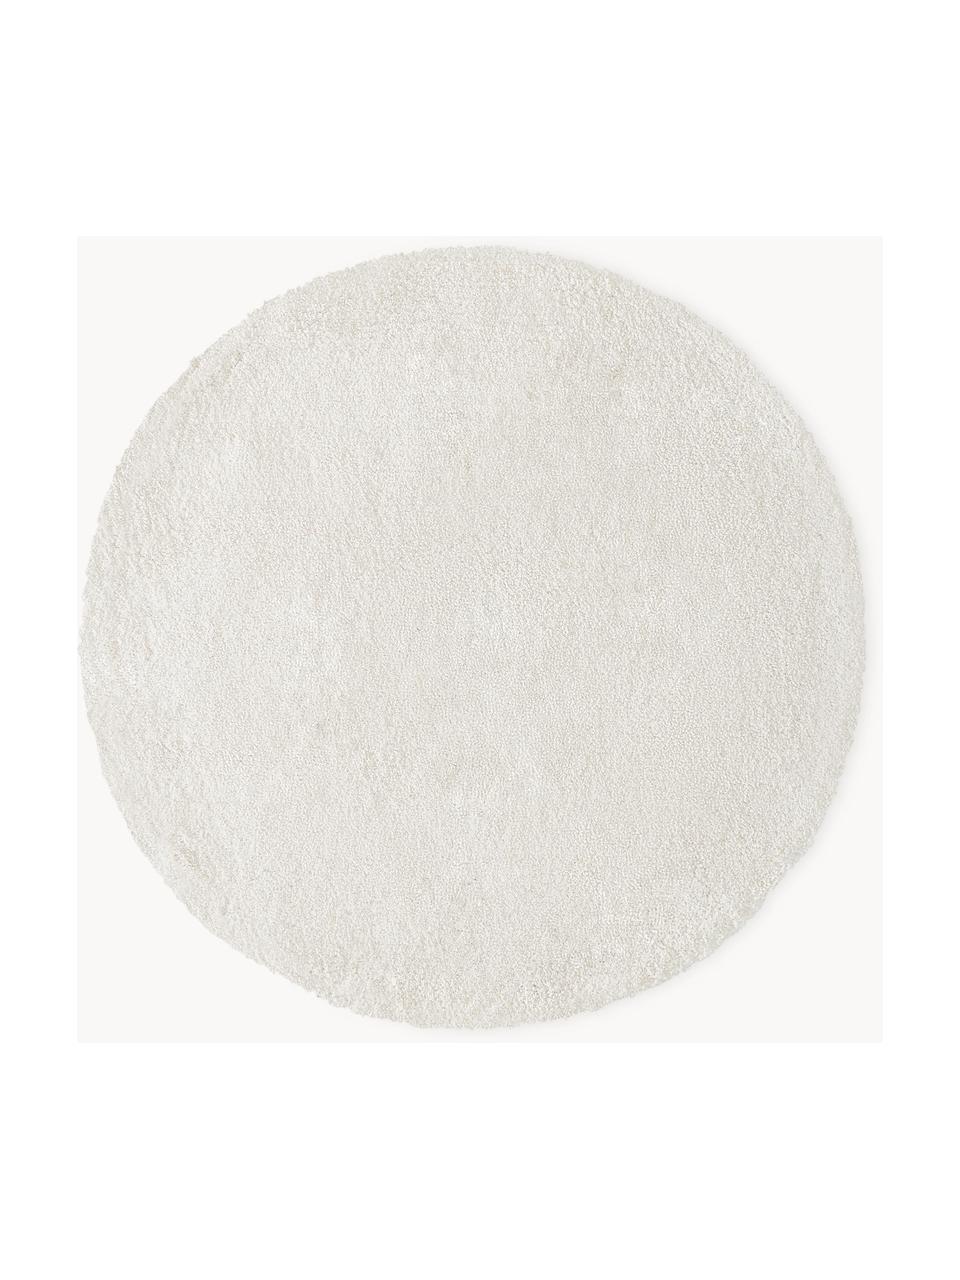 Tapis rond épais et moelleux Leighton, Blanc cassé, Ø 150 cm (taille M)